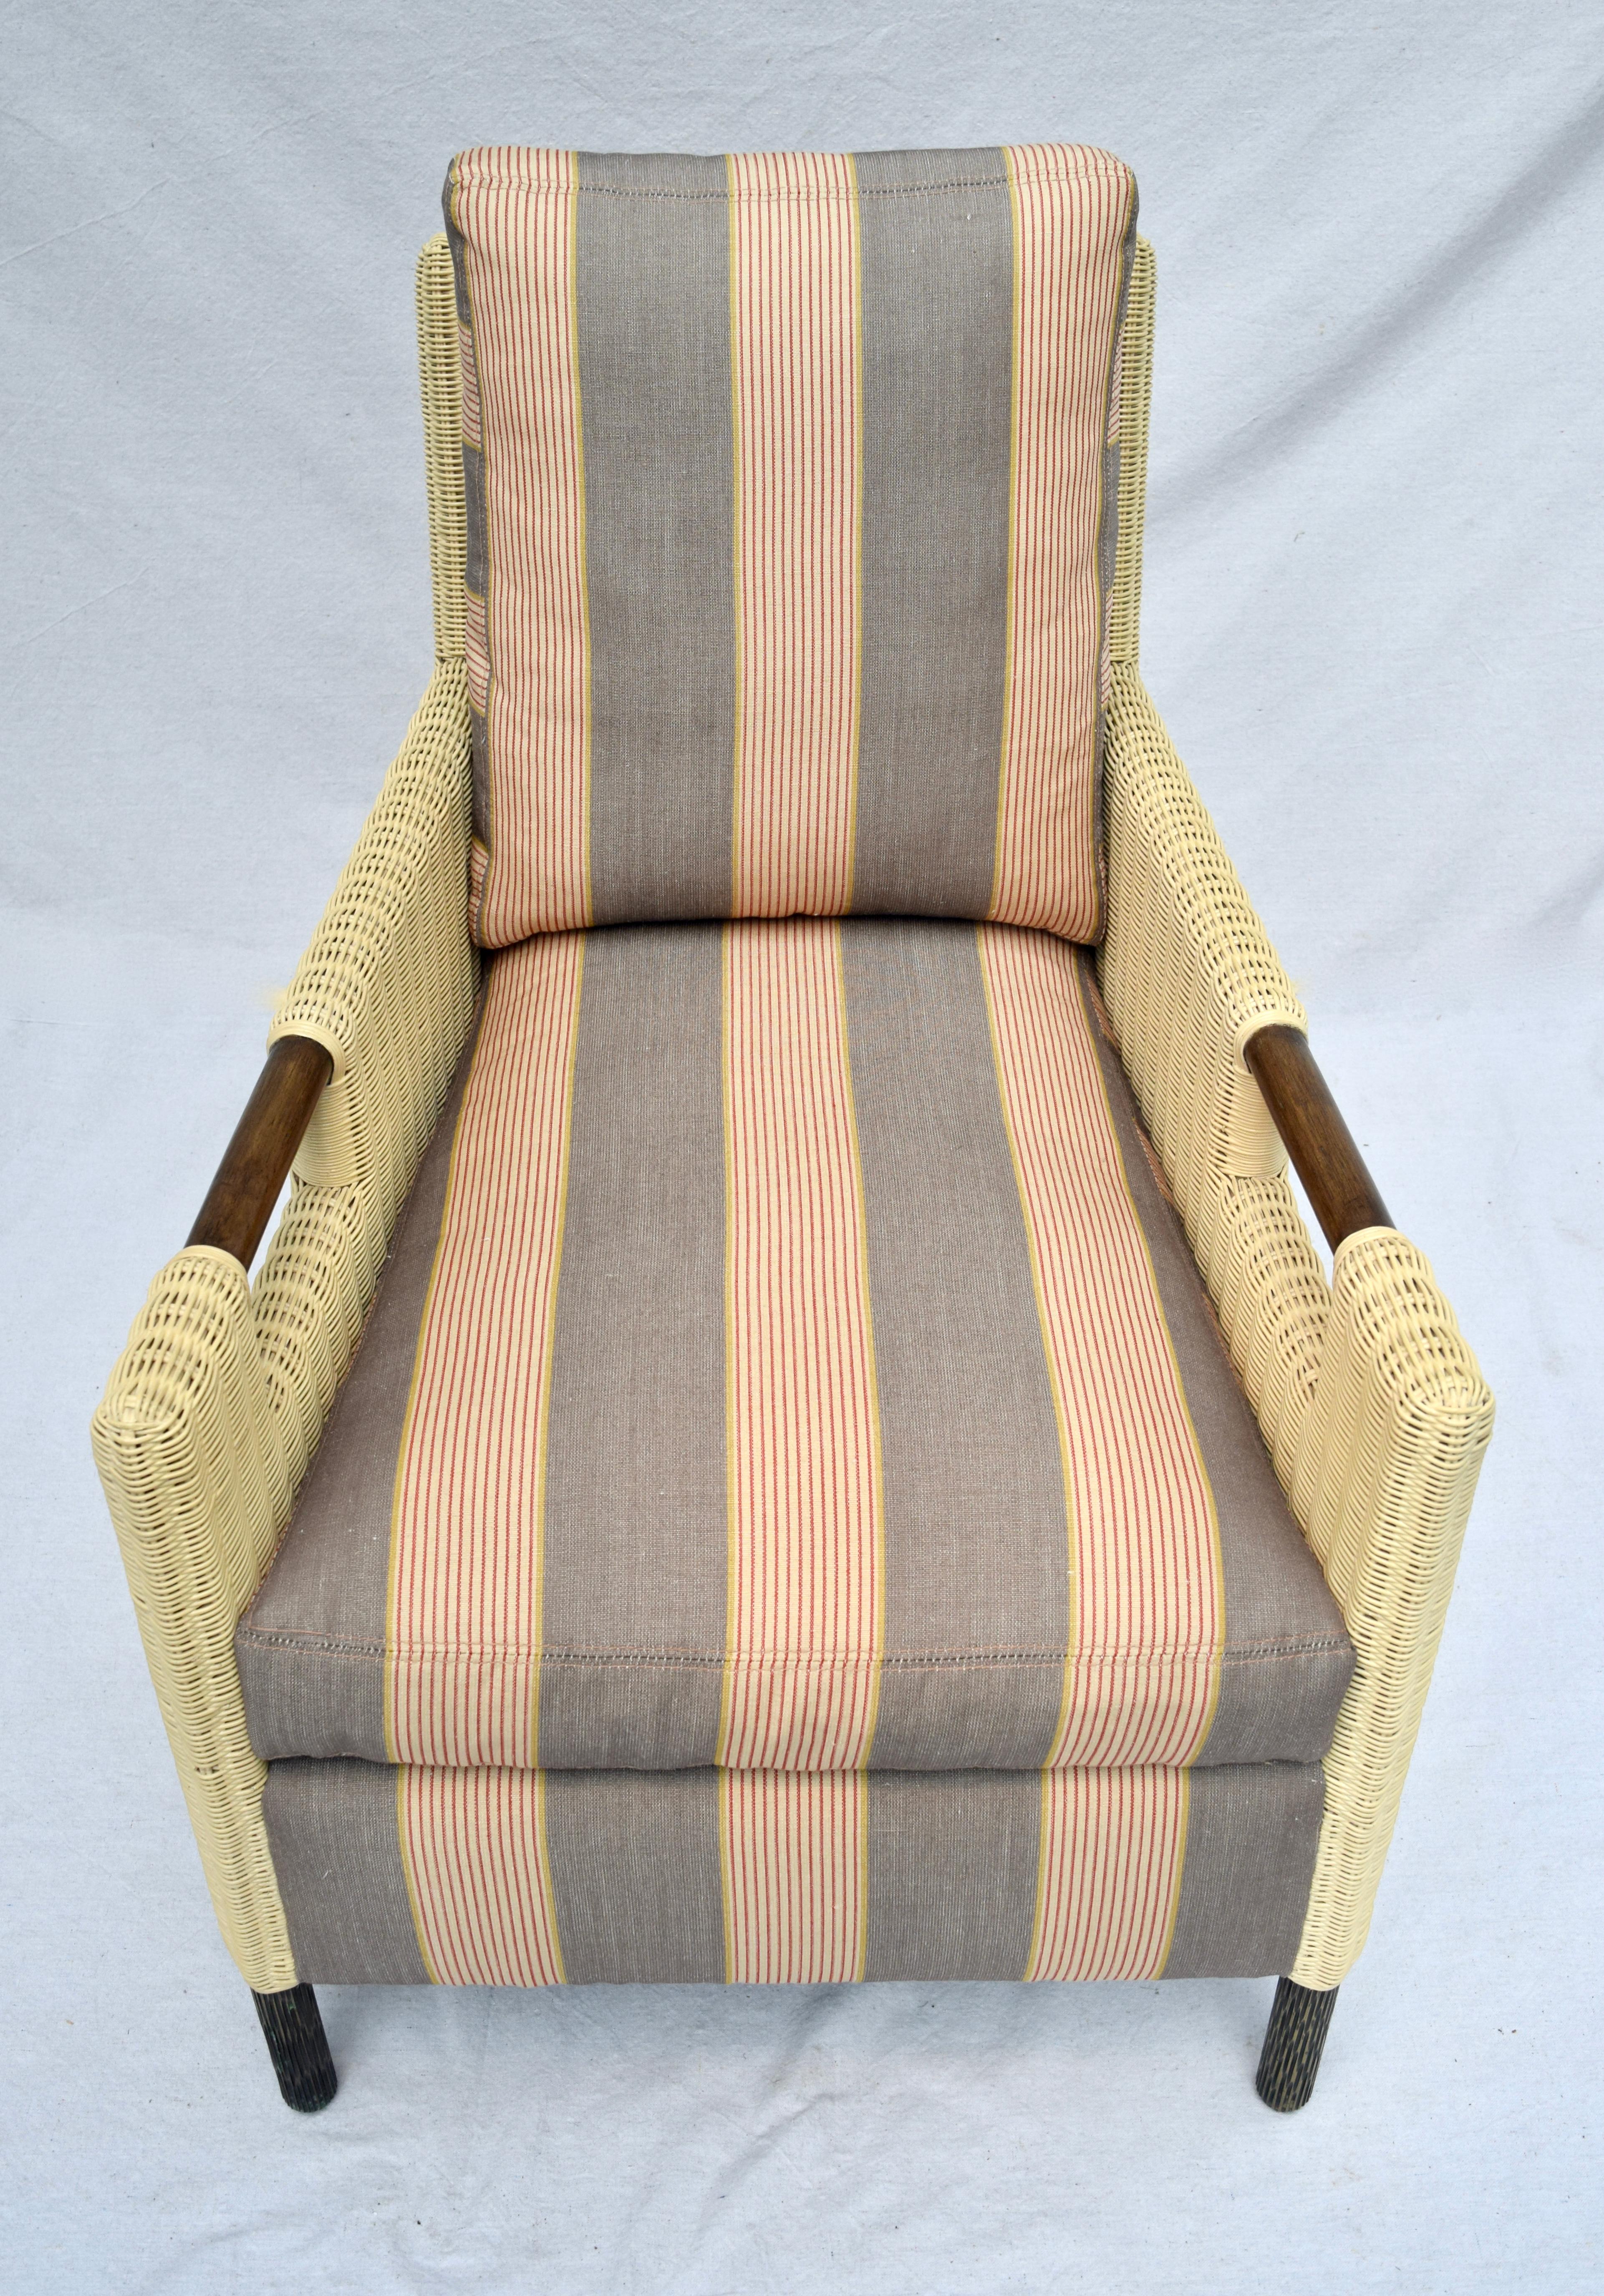 Rattan Thomas Pheasant for McGuire Organic Modern Club Chair & Ottoman For Sale